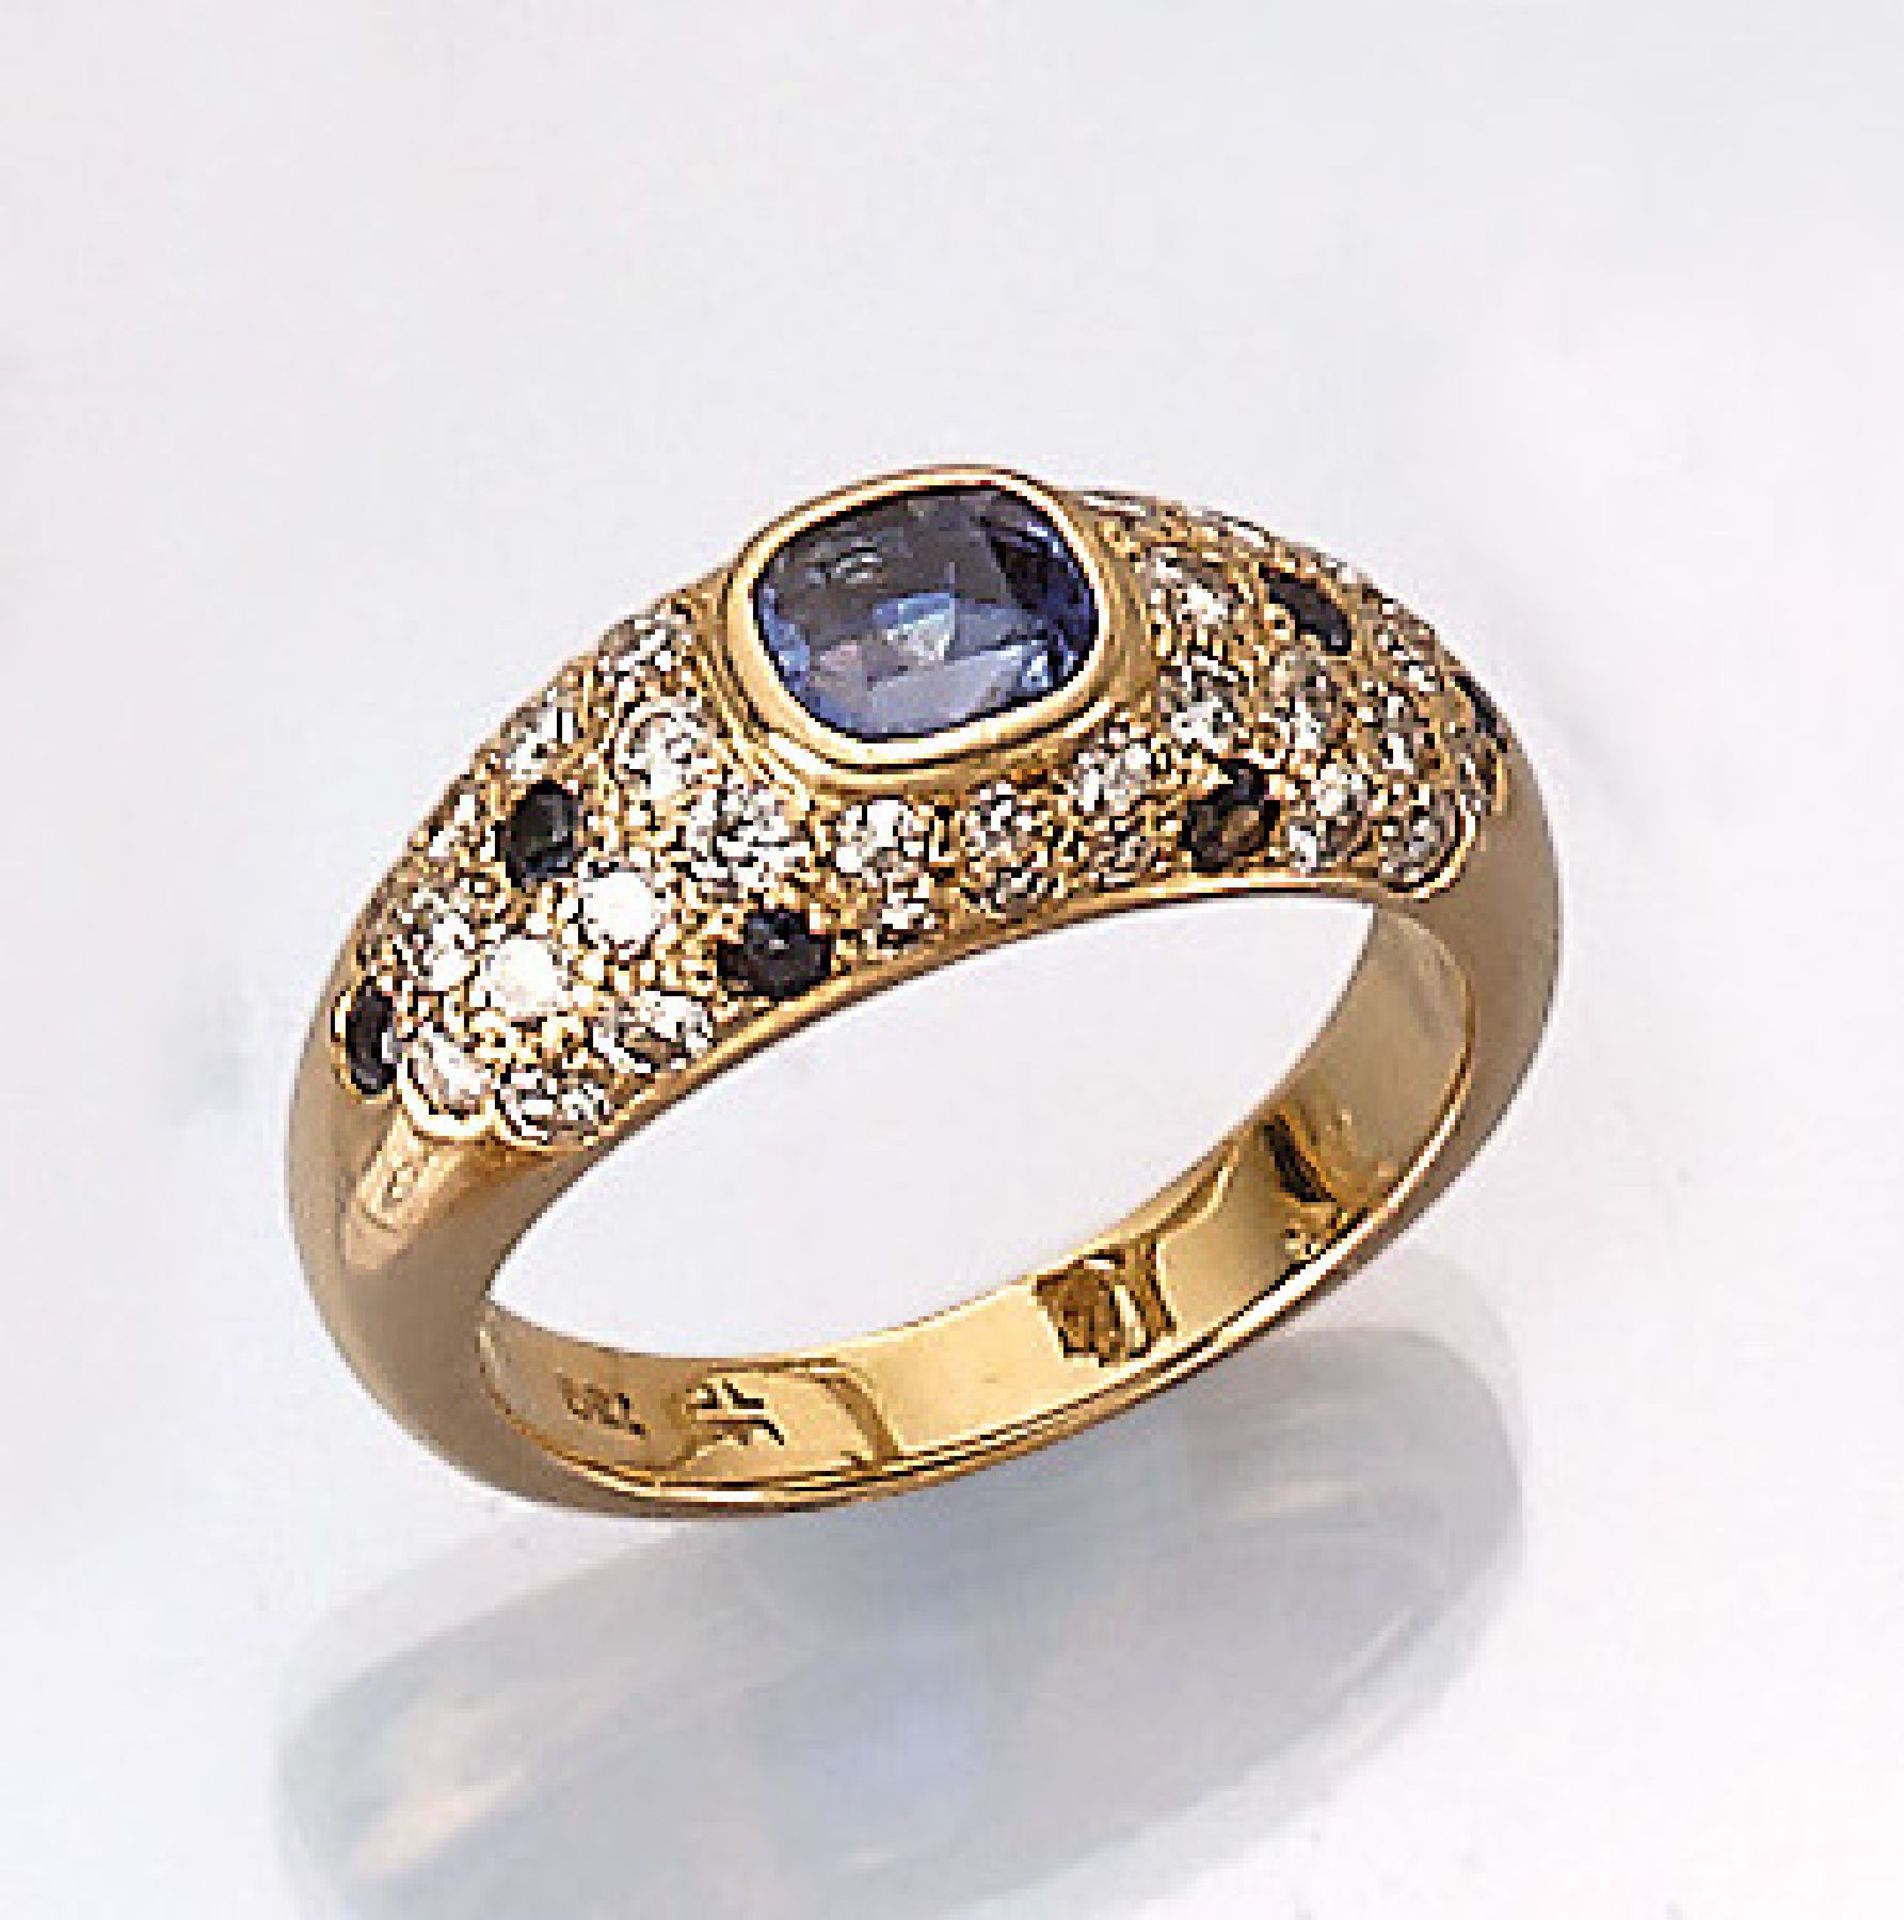 18 kt Gold Ring mit Saphiren und Diamanten, GG 750/000, 1 Saphir im Antikschliff ca. 1.10 ct, 8